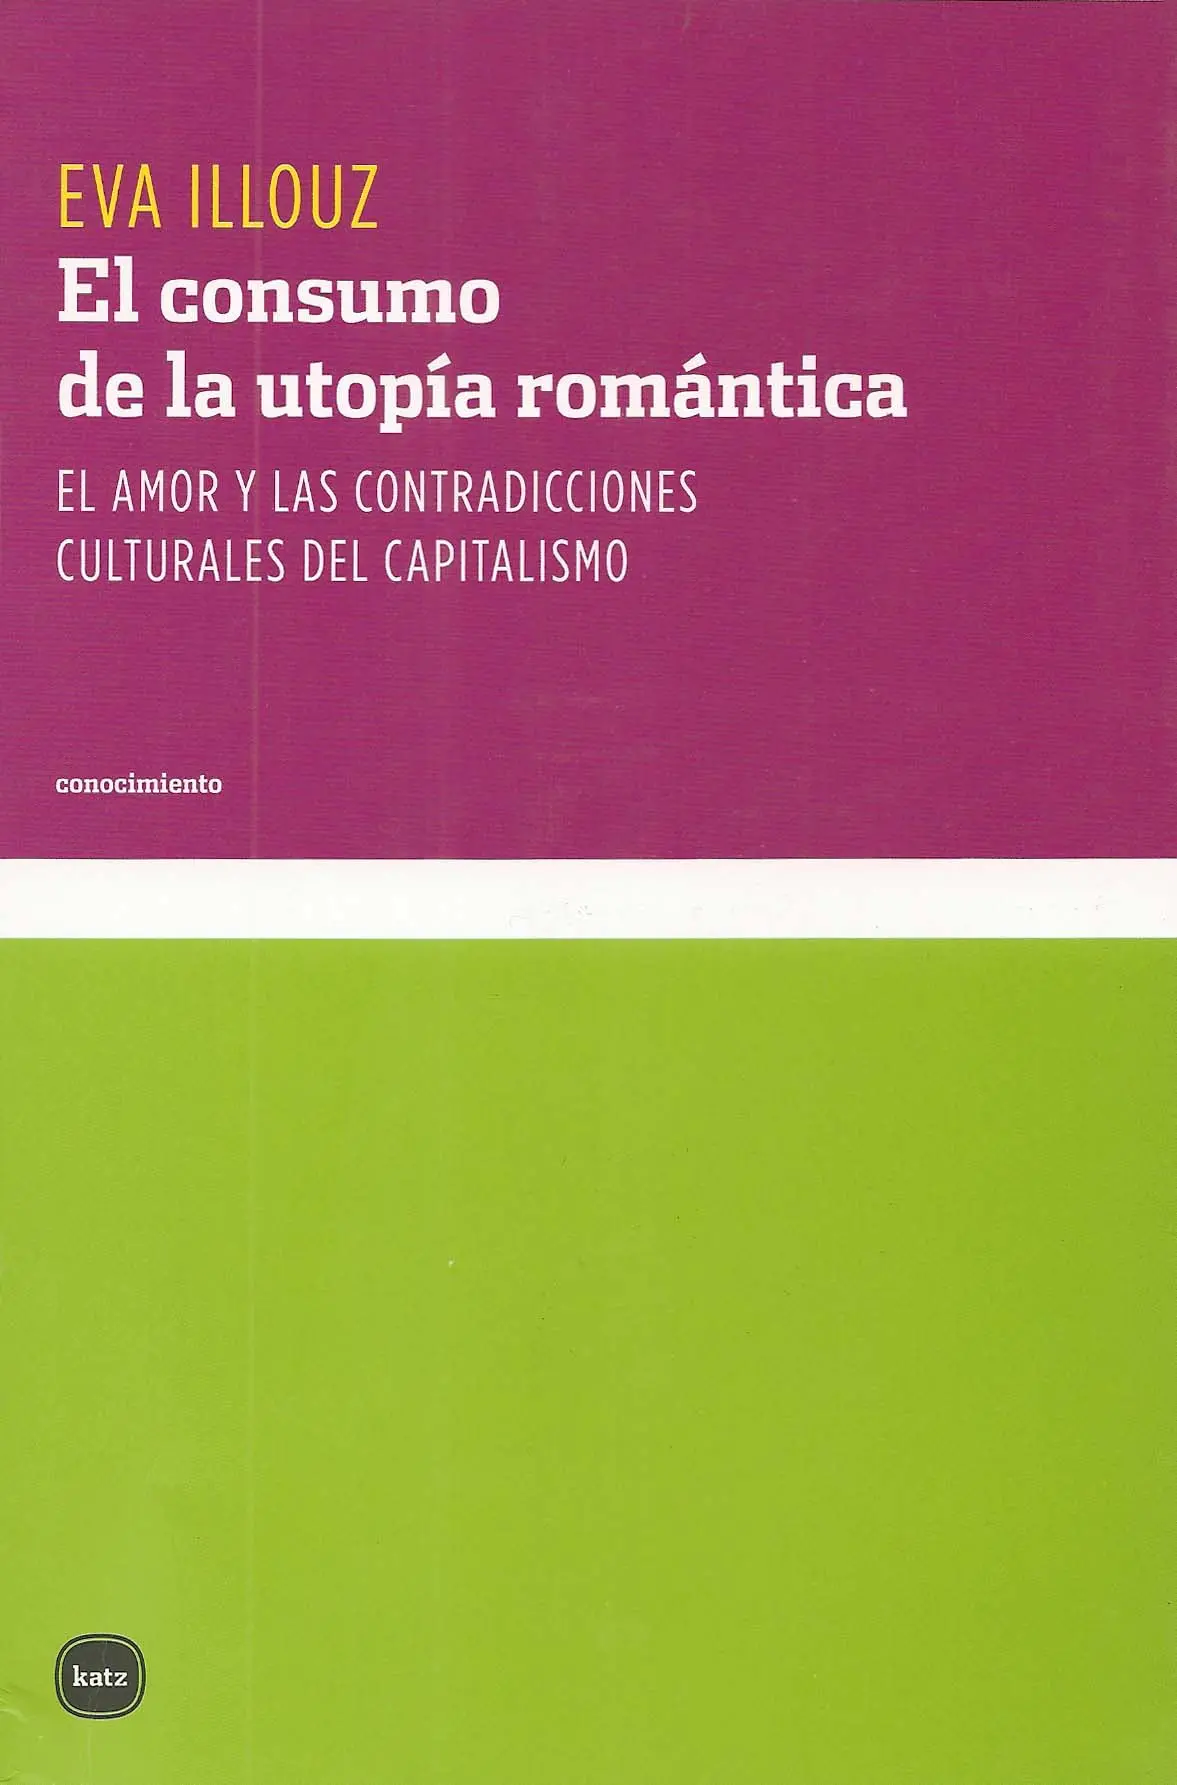 el consumo de la utopía romántica resumen - Qué es una utopía en el amor